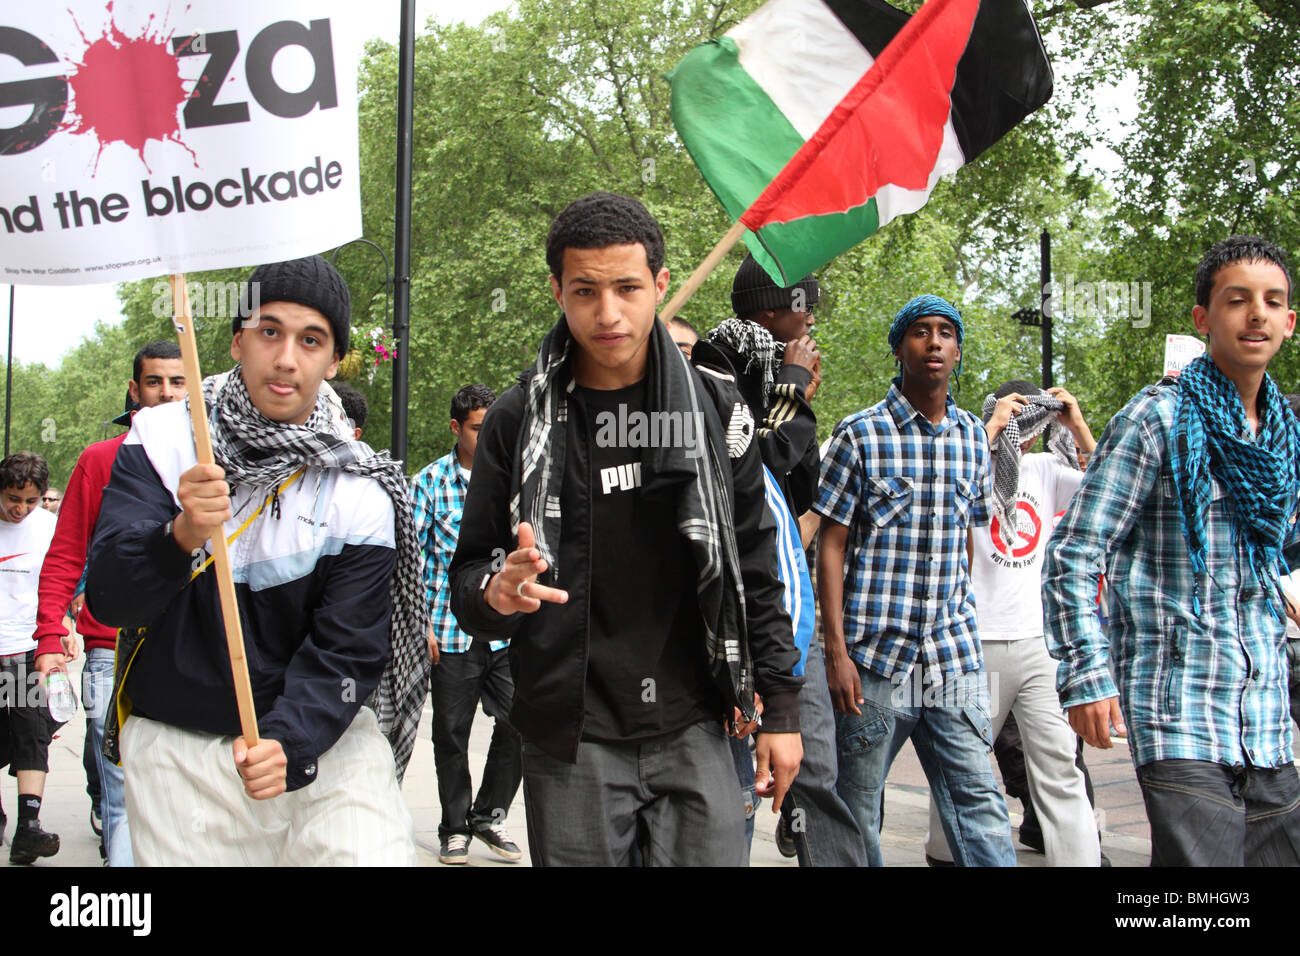 Les jeunes manifestants palestiniens à la "Liberté pour la Palestine' démonstration sur Whitehall, Westminster, Londres, Angleterre, Royaume-Uni Banque D'Images